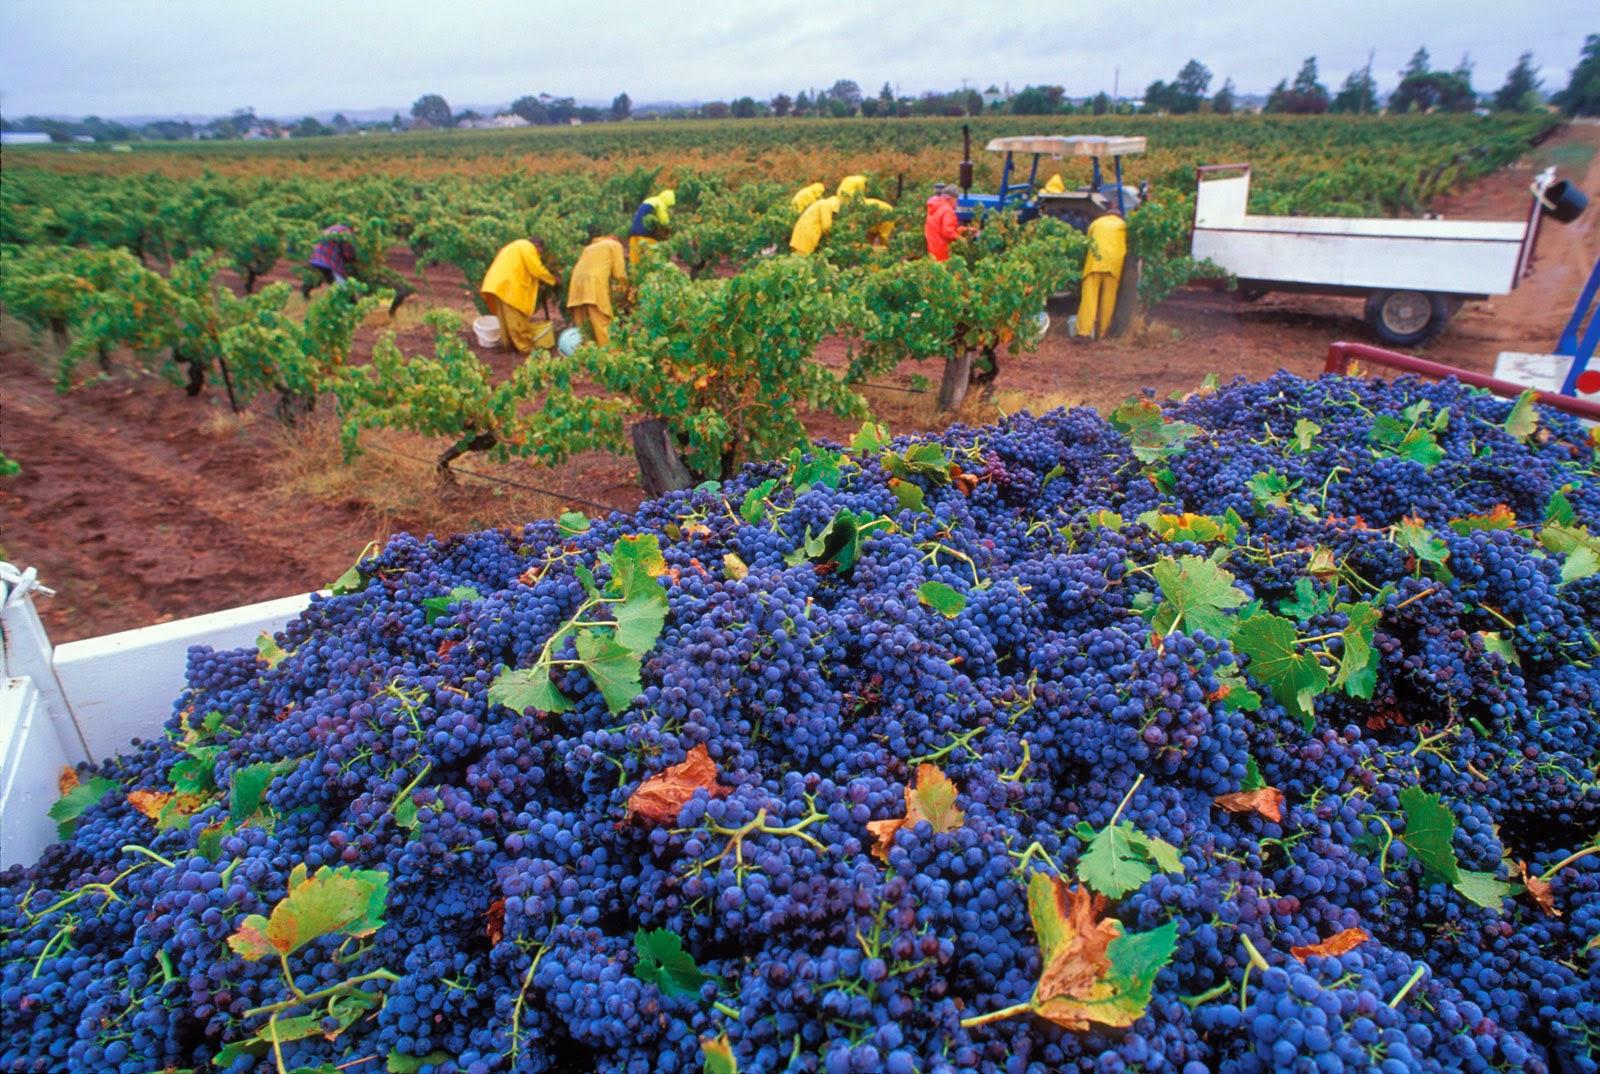 Цветное хозяйство. Виноградники Австралии. Виноградники Австралии Shiraz. Овощеводство в Австралии. Сбор урожая винограда.